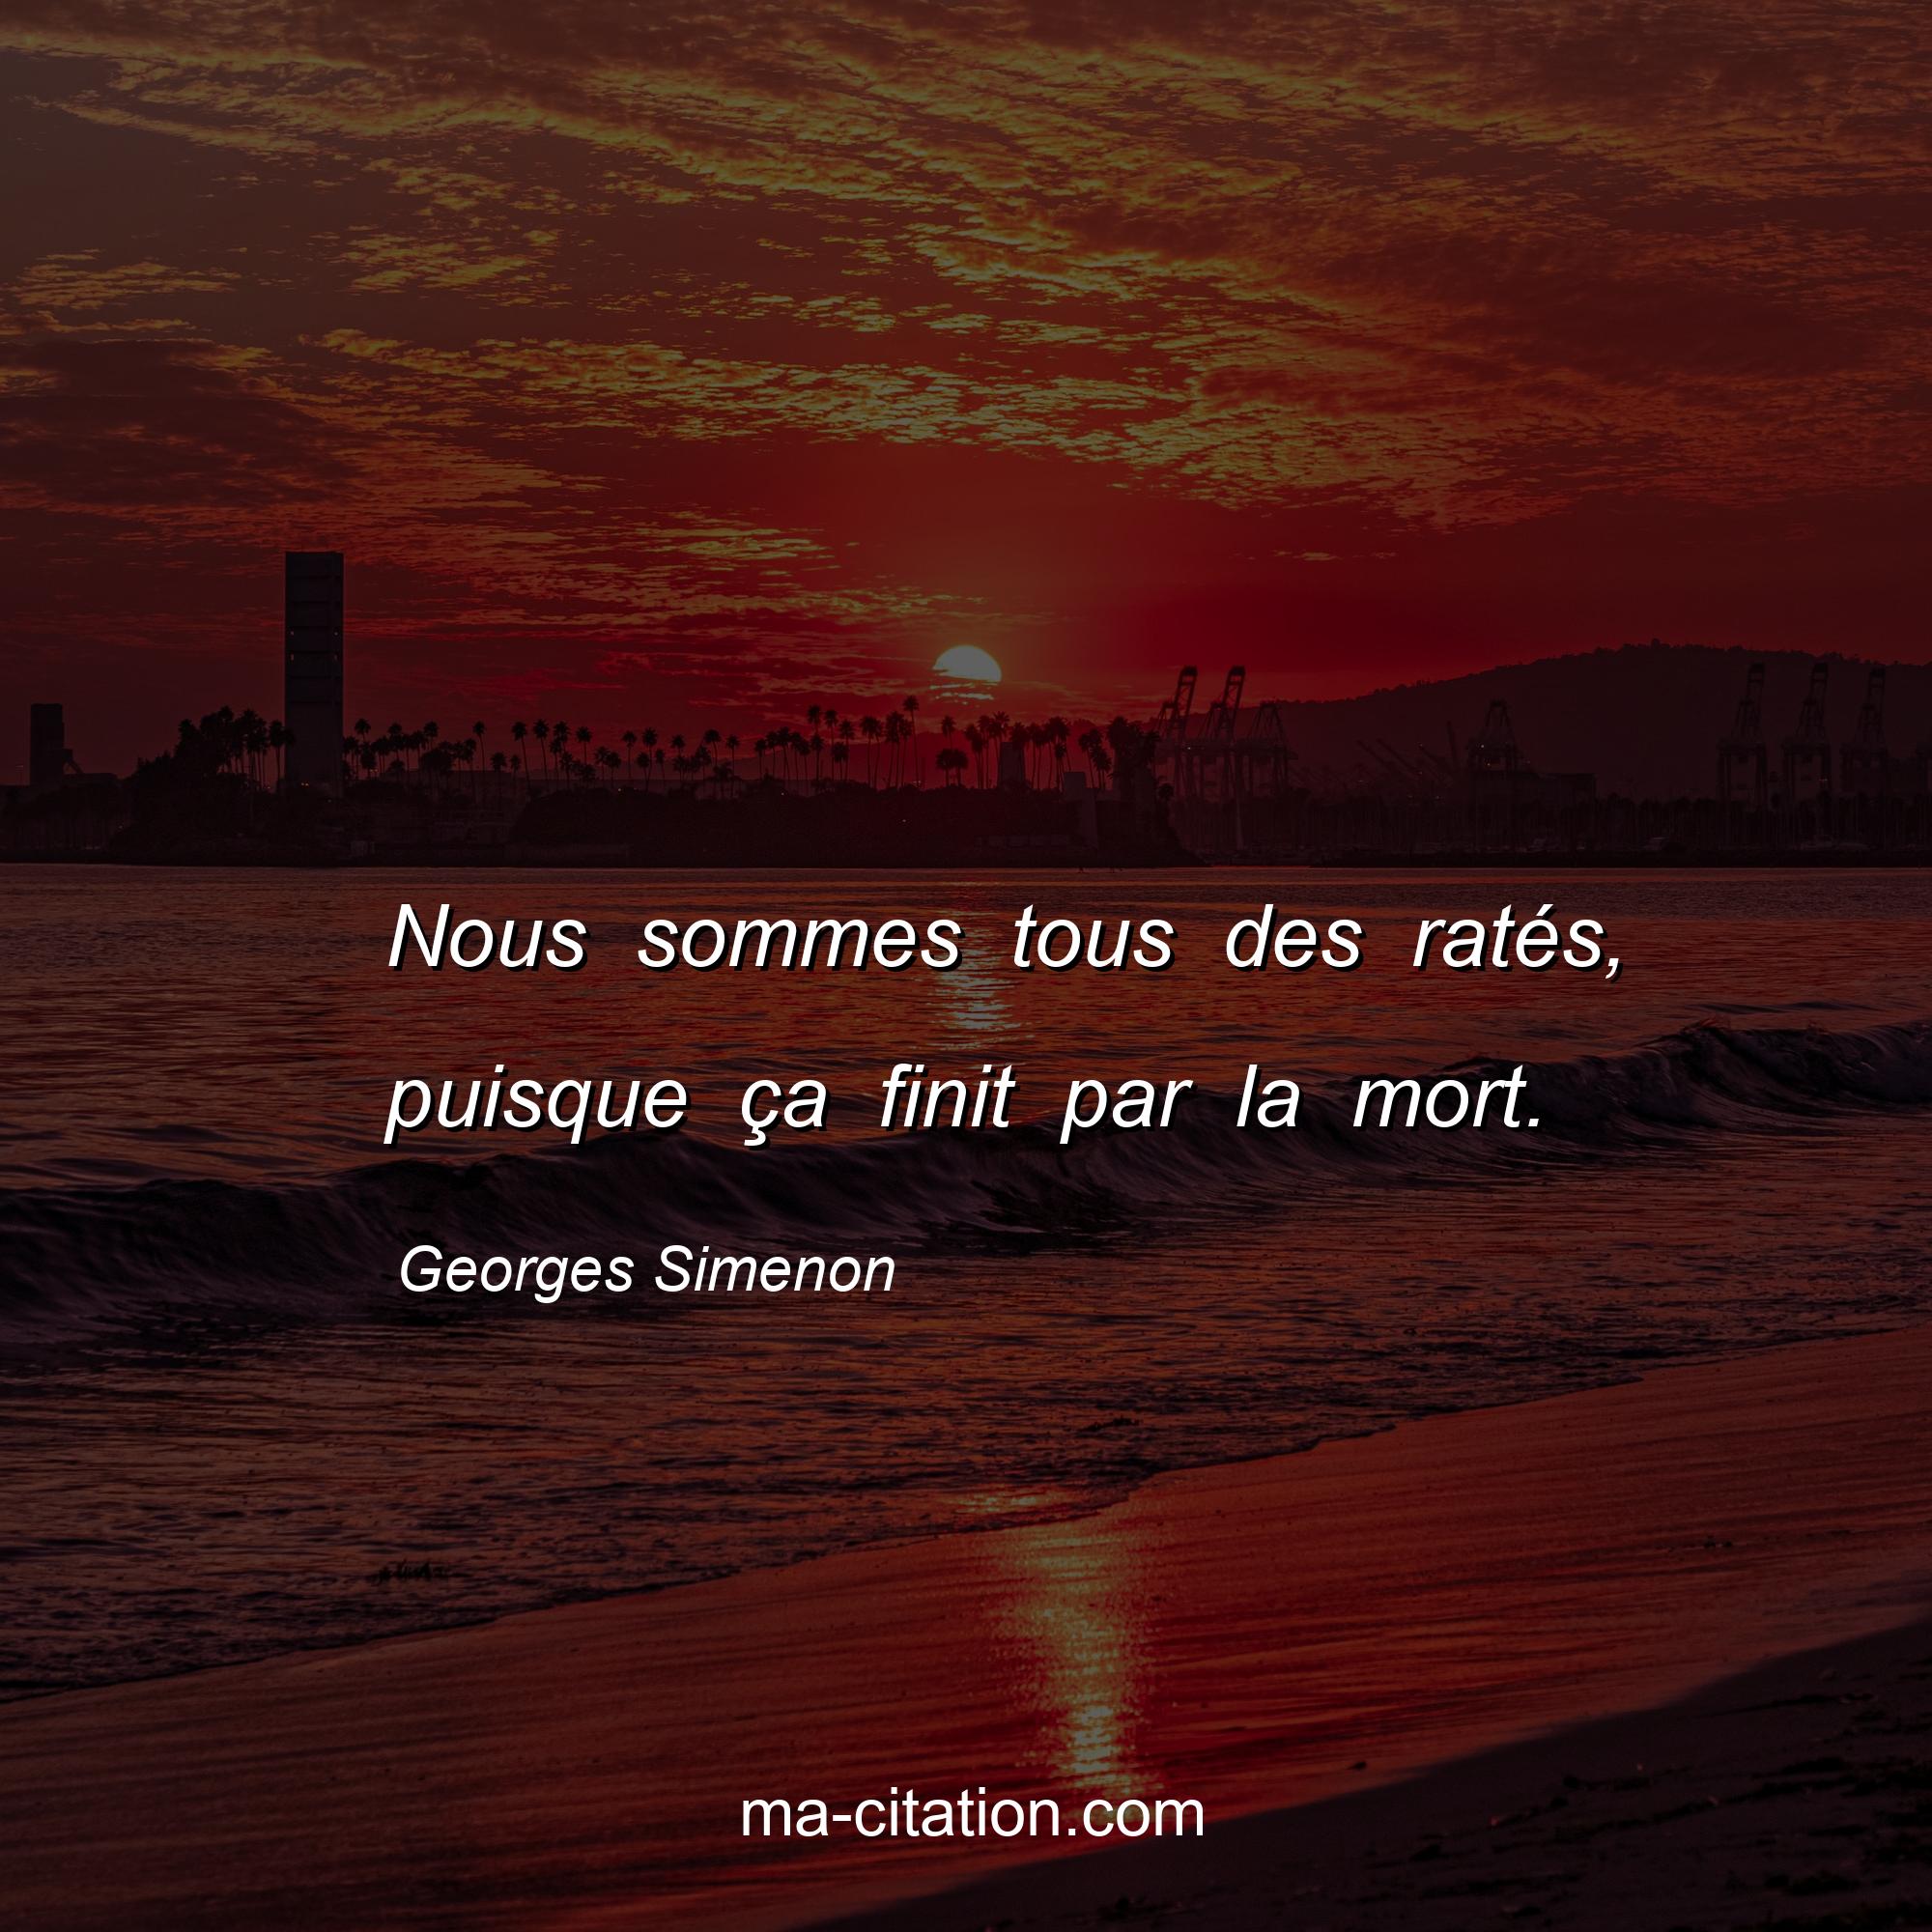 Georges Simenon : Nous sommes tous des ratés, puisque ça finit par la mort.